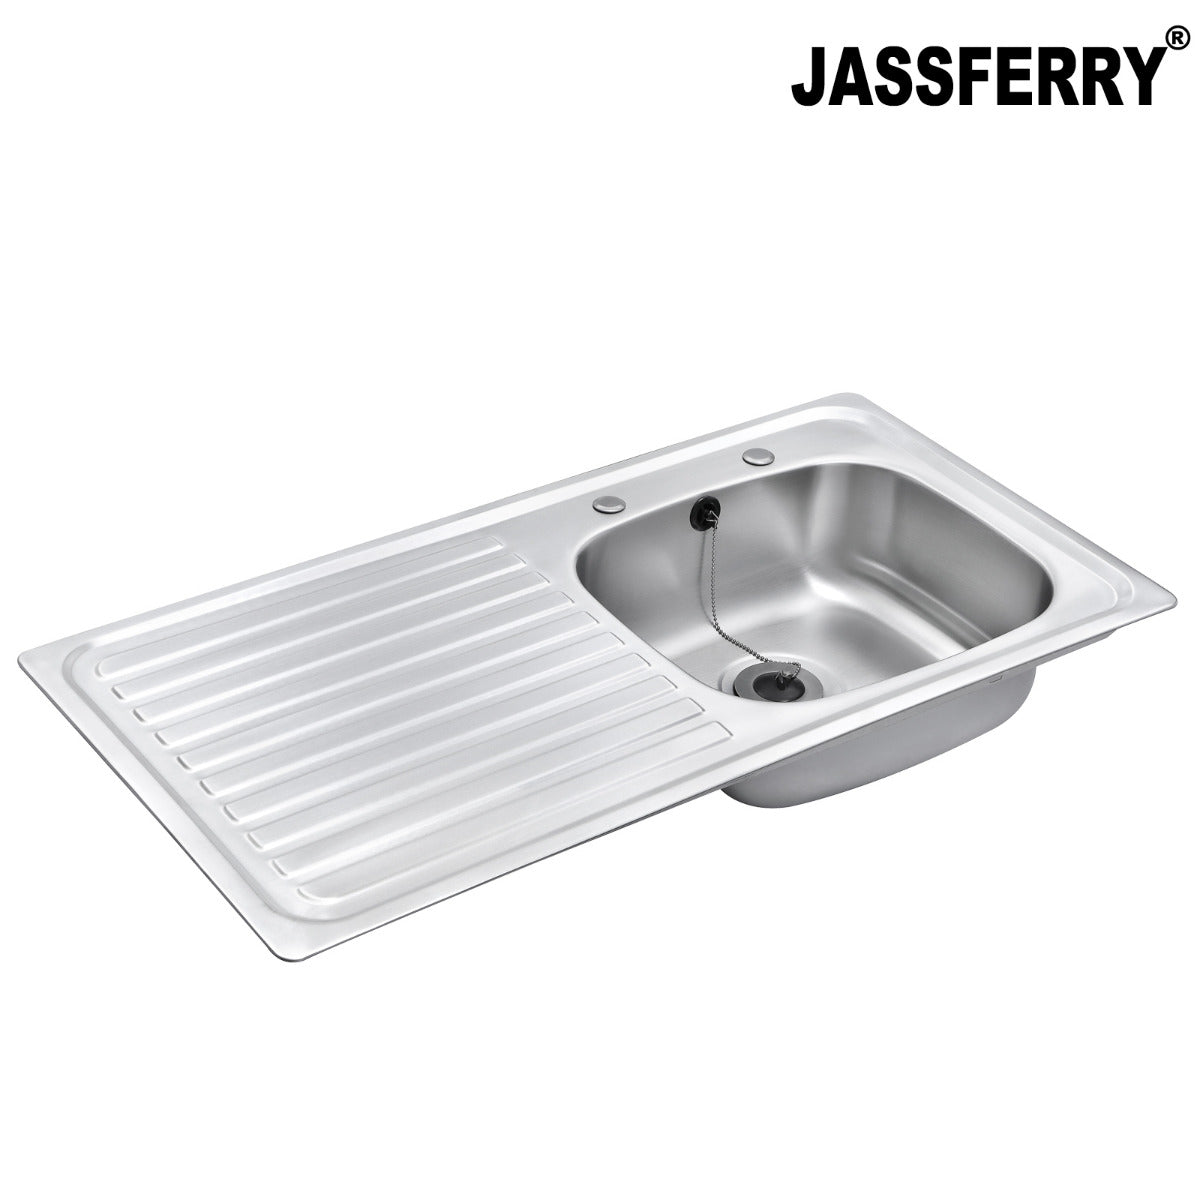 JassferryJASSFERRY Two Tap Holes Stainless Steel Kitchen Sink 1 Bowl Lefthand DrainerKitchen Sinks